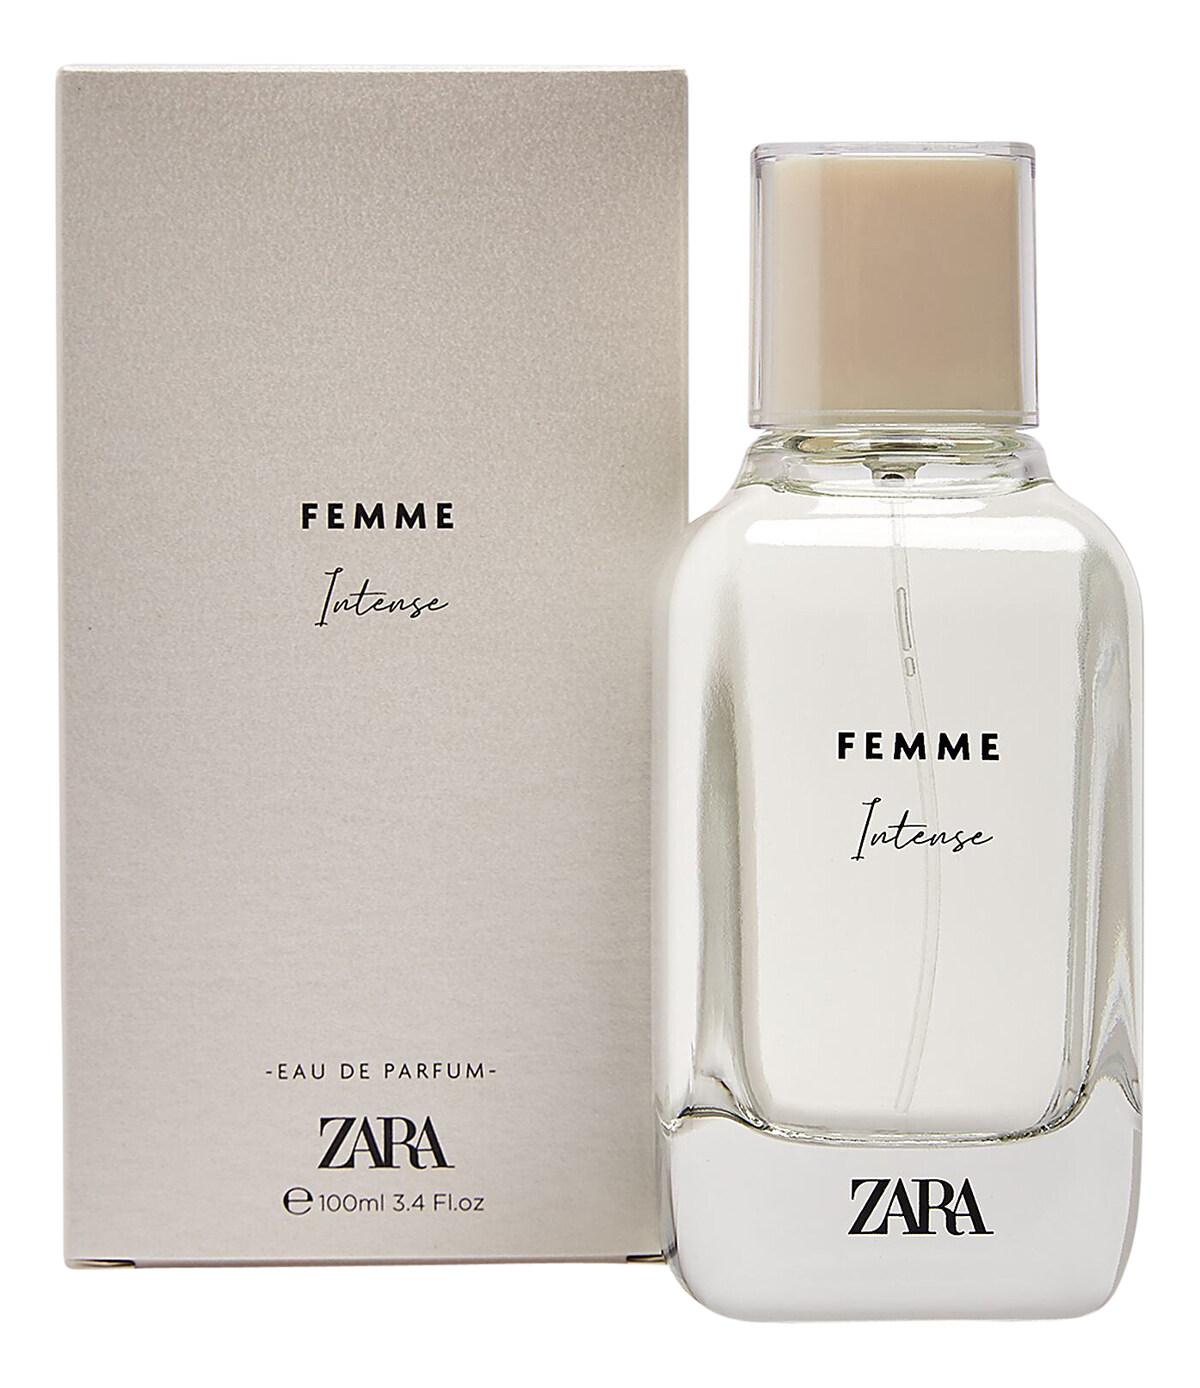 Parfum Zara Femme - Homecare24